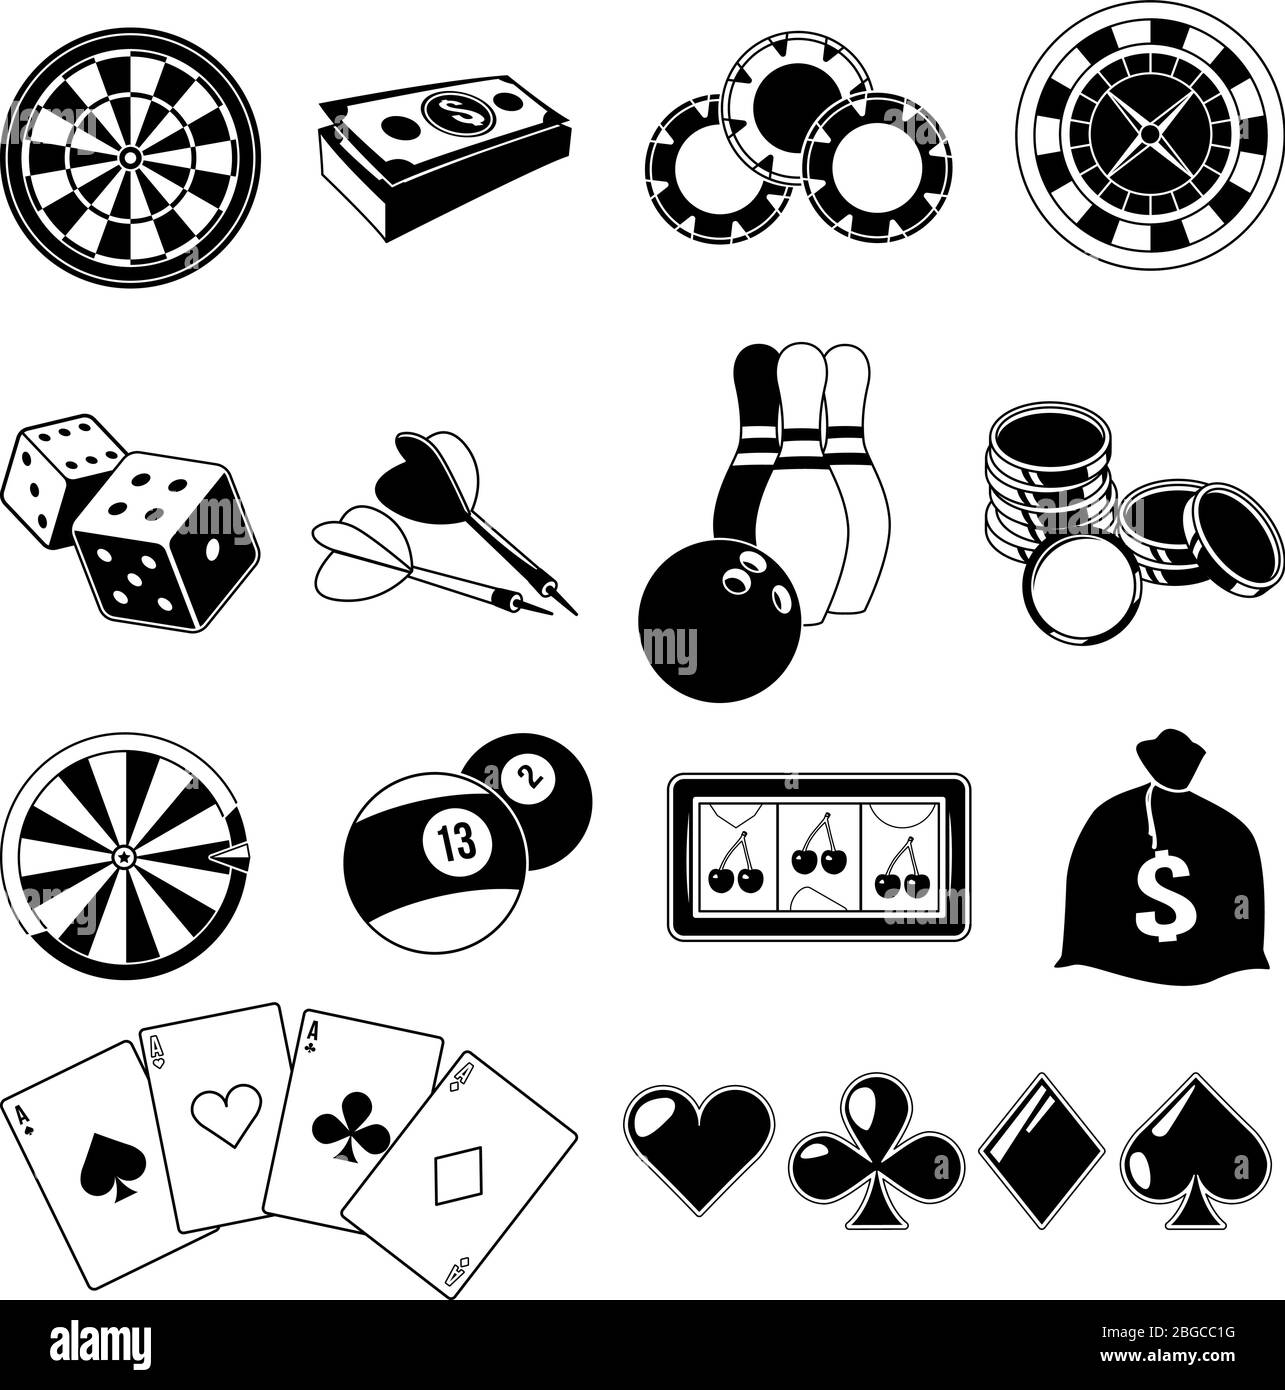 Gioco d'azzardo, giochi di carte e diversi intrattenimenti da casinò. Set di illustrazioni monocromatiche. Silhouette vettoriali Illustrazione Vettoriale